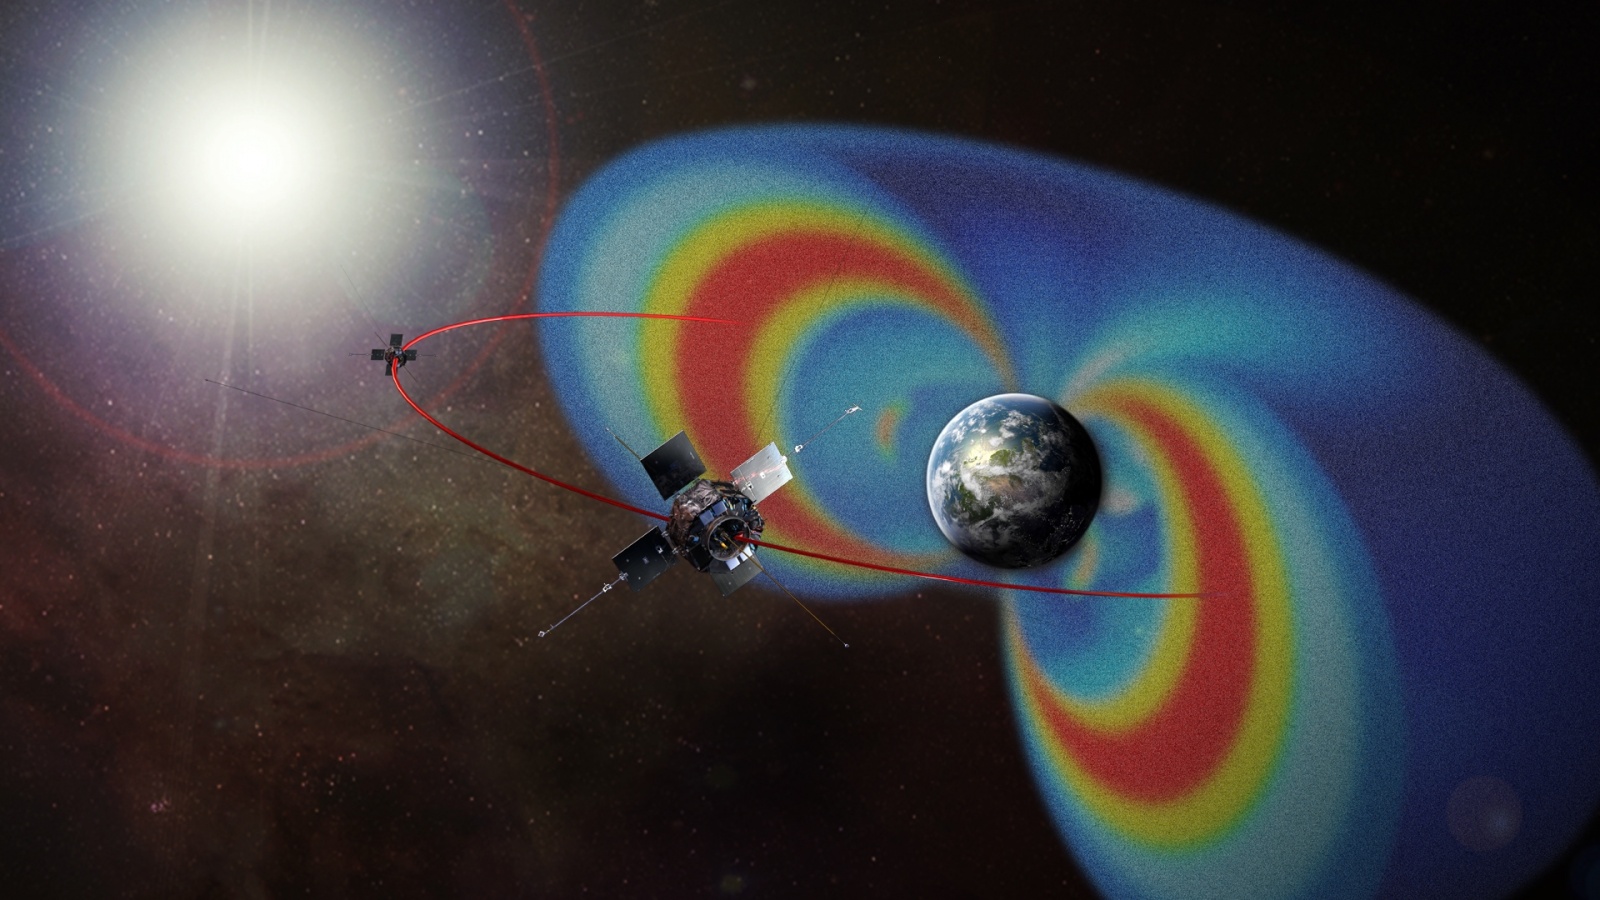 НАСА: люди создали вокруг Земли радиококон из сверхдлинных волн, защищающий от космической радиации - 2